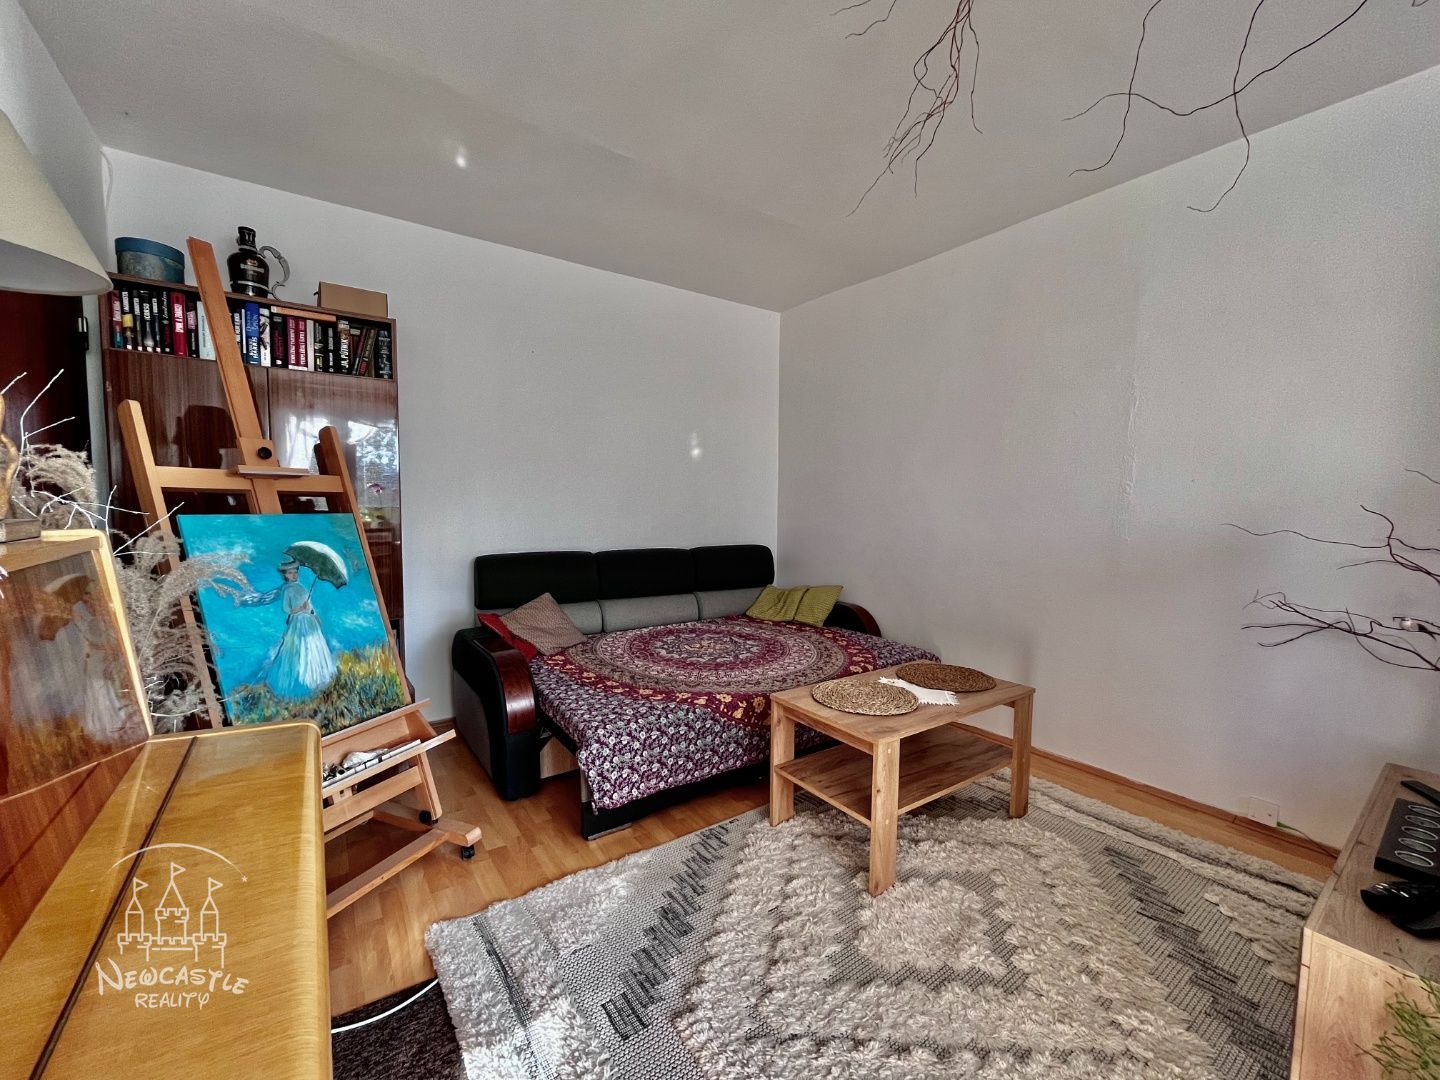 NEWCASTE | Predaj 3 izbového bytu v Hliníku nad Hronom